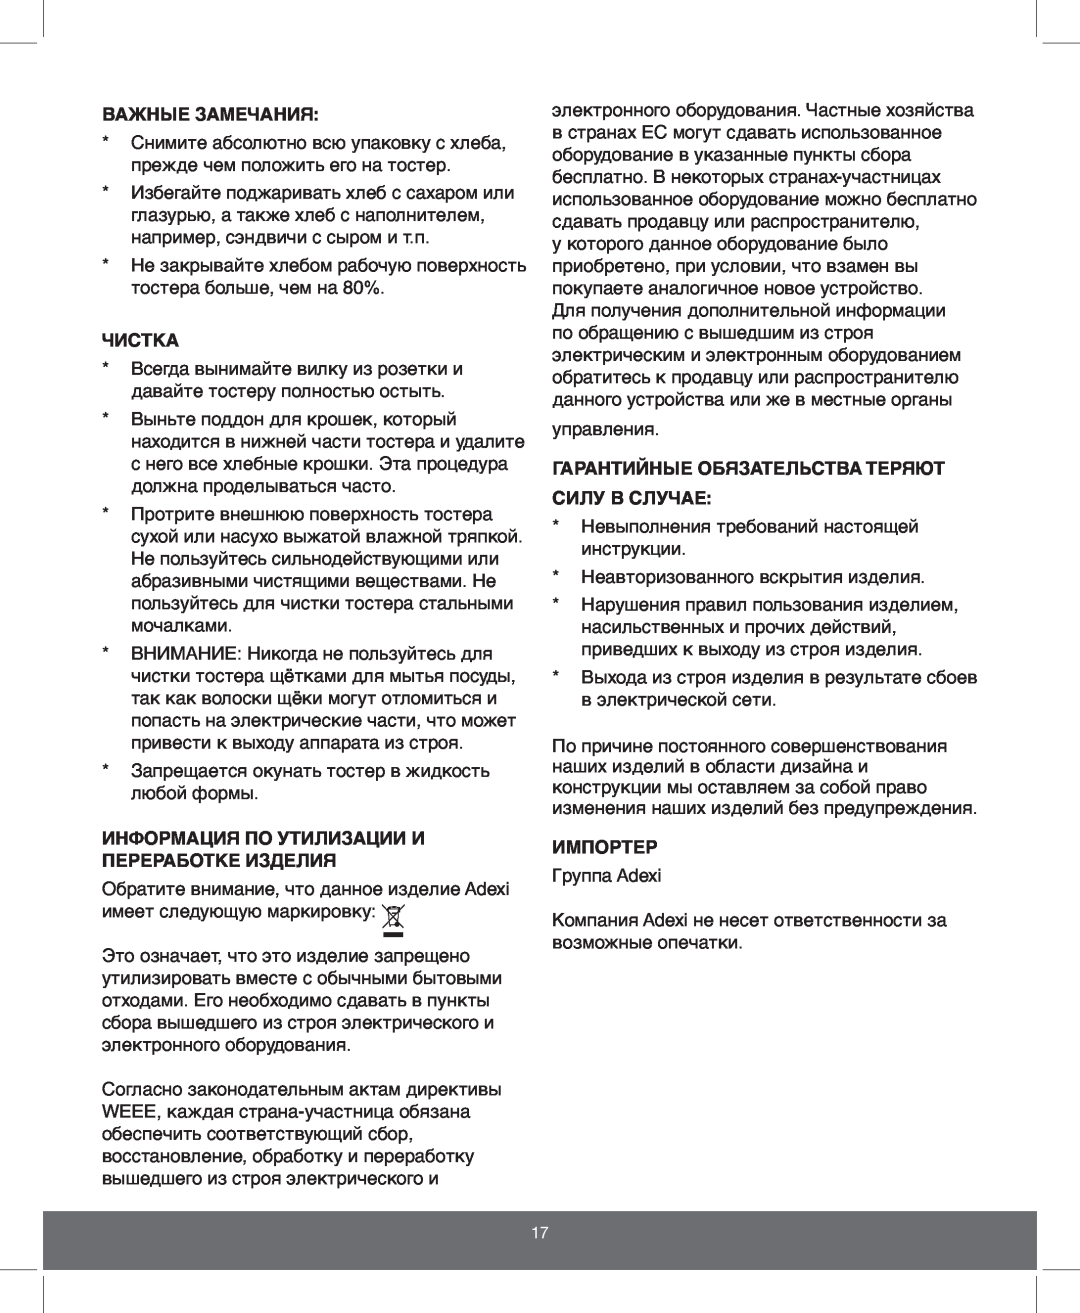 Melissa 643-110 manual Важные Замечания, Чистка, Информация По Утилизации И Переработке Изделия, Импортер 